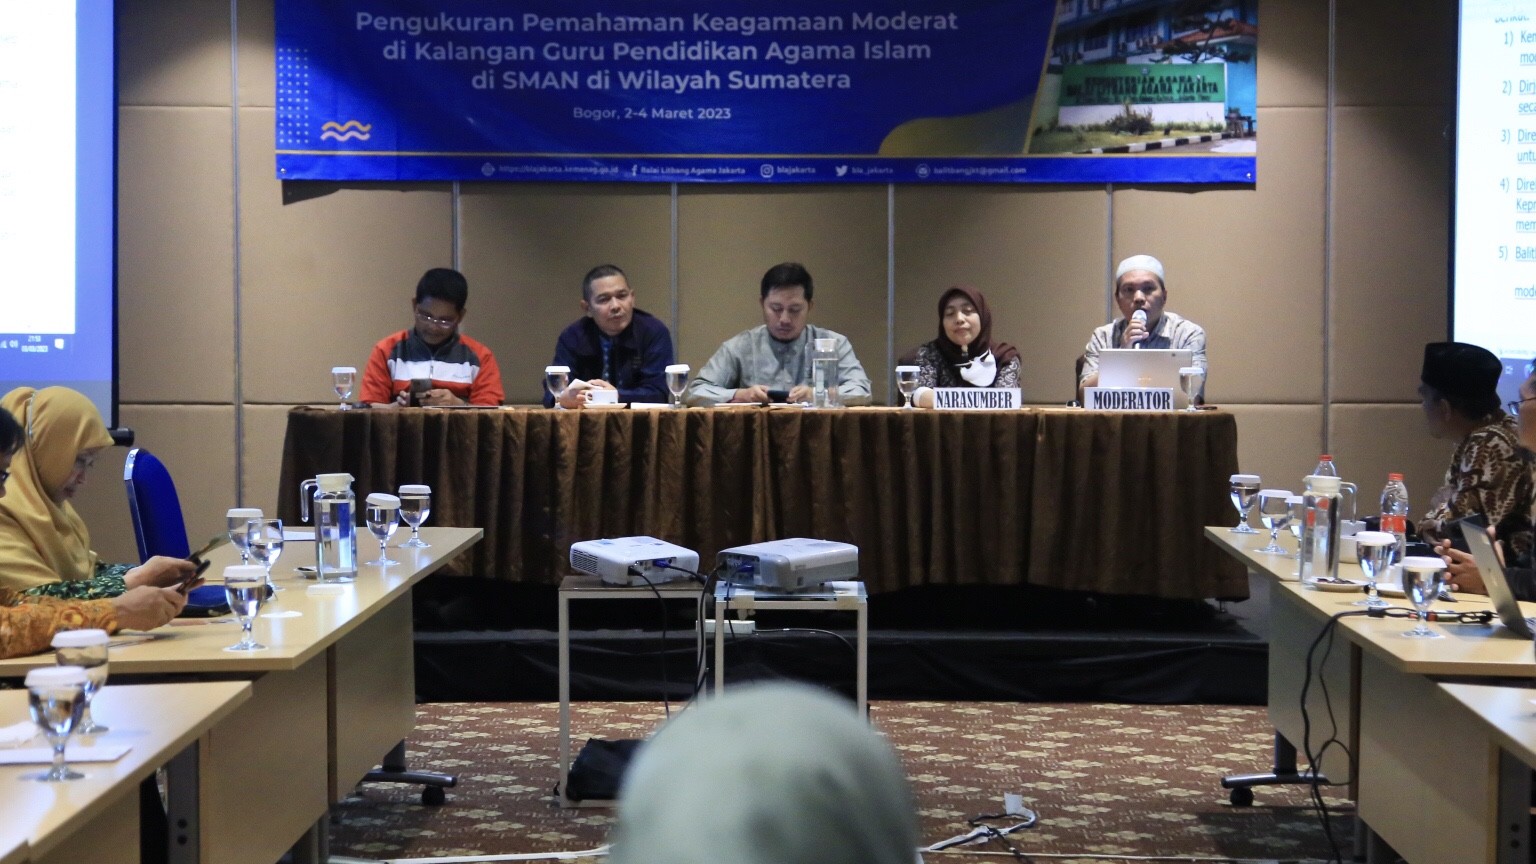 Diskusi penyusunan dan pelaporan pengukuran paham keagamaan moderat Guru PAI SMAN wilayah Sumatera. 